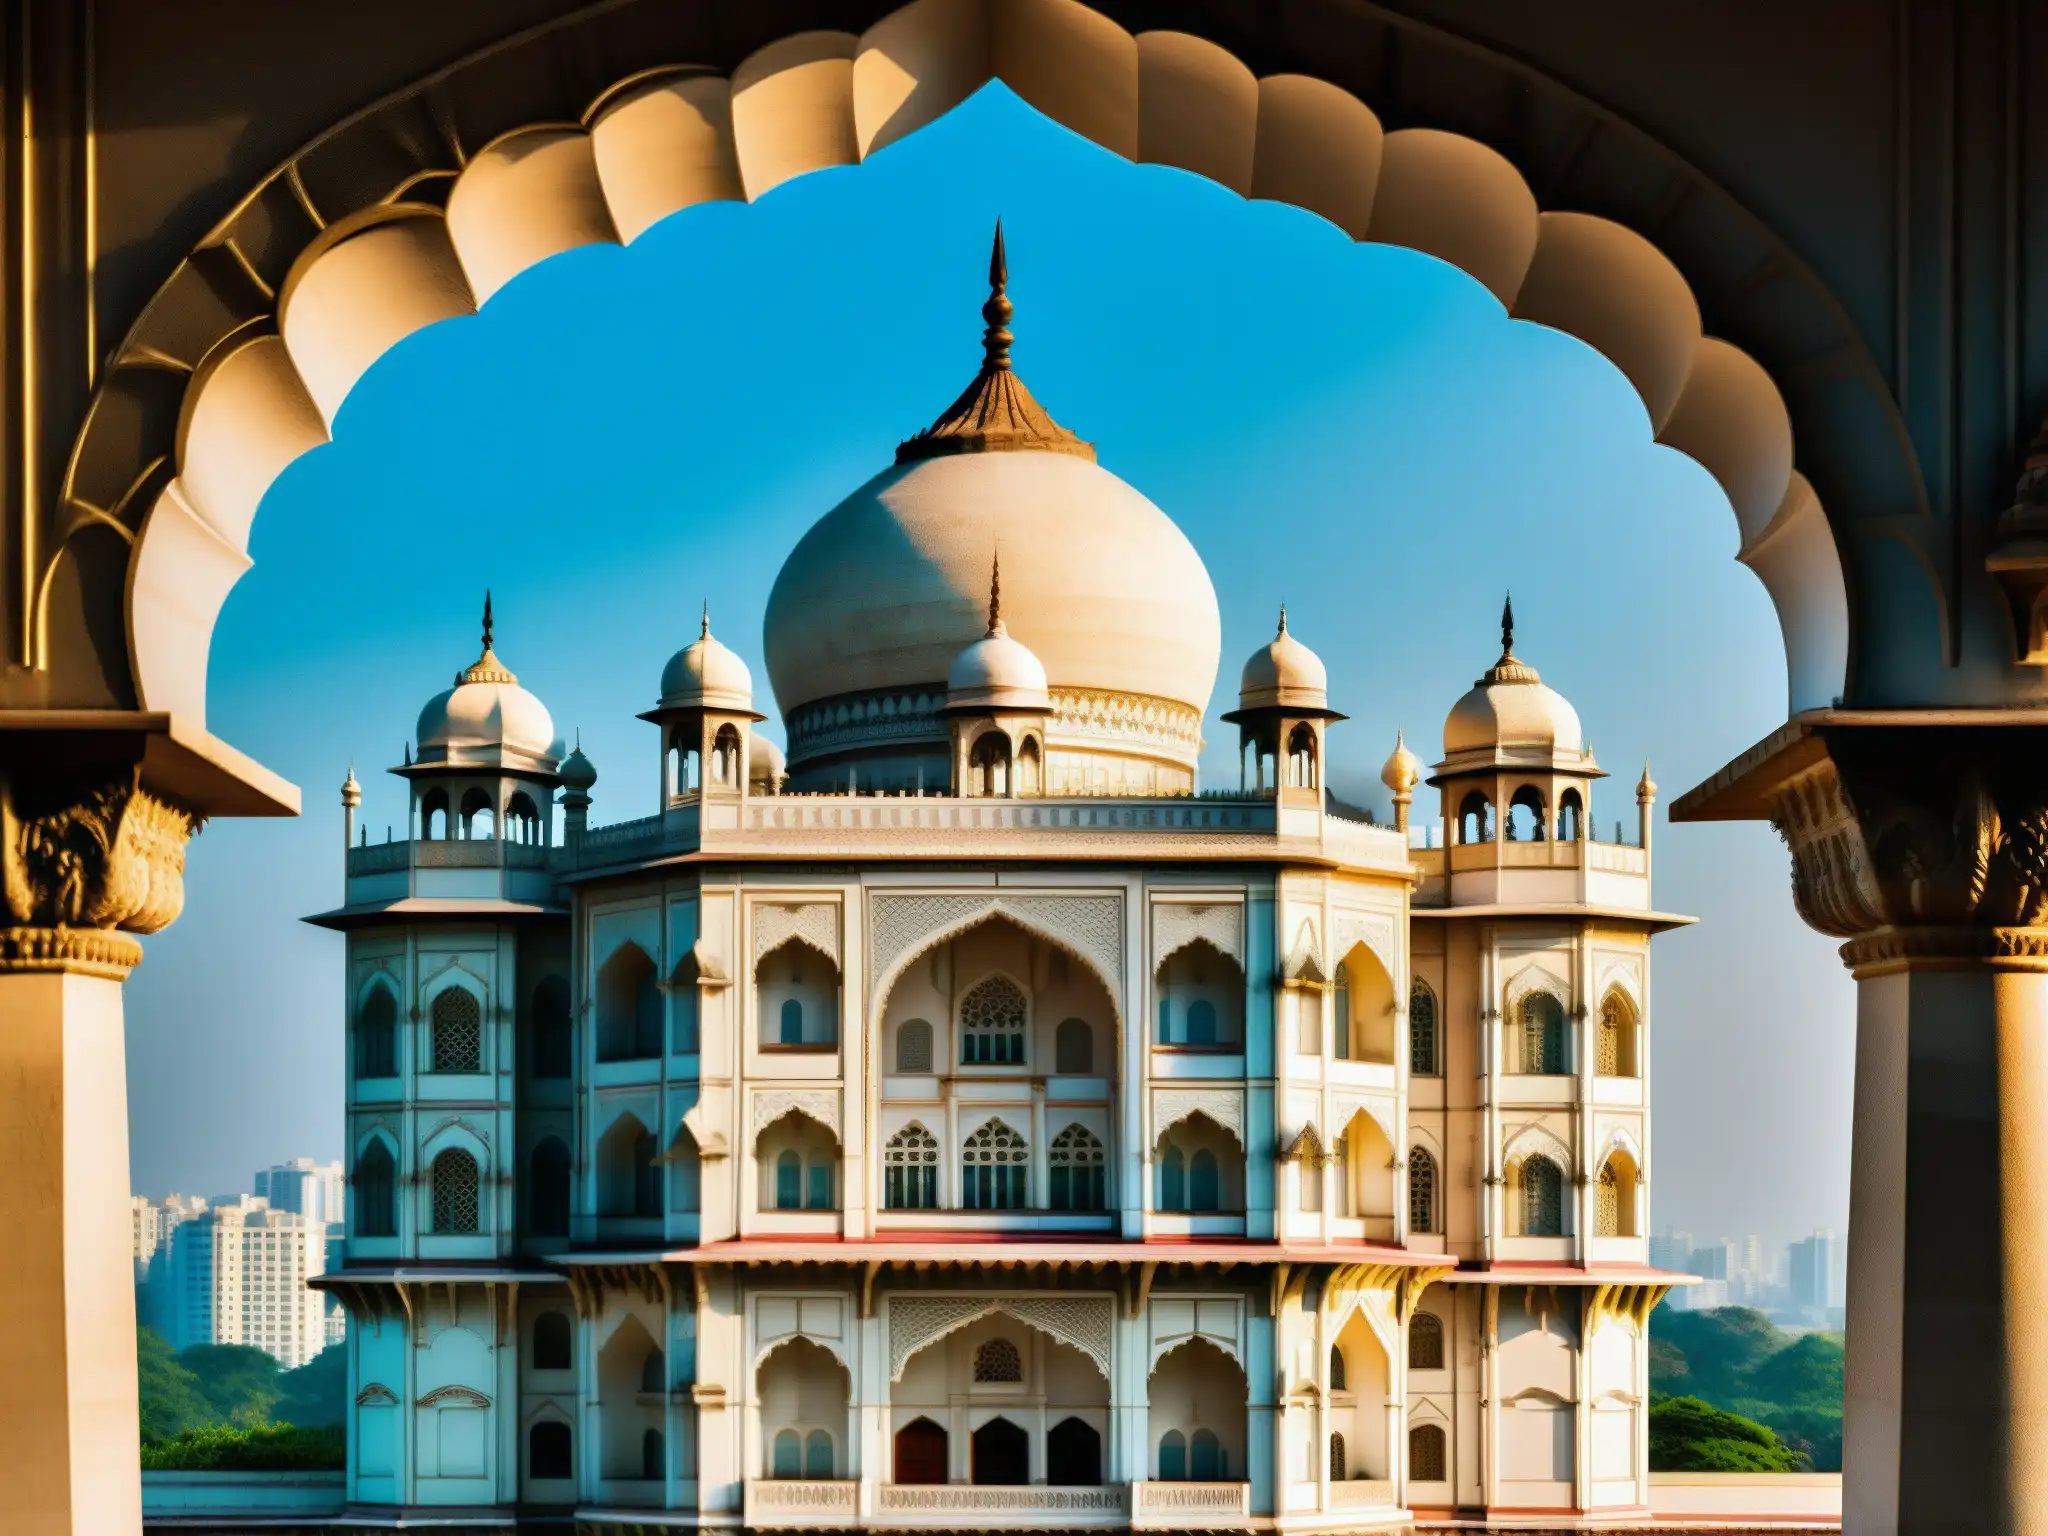 Detalle majestuoso del Taj Mahal Palace en Mumbai, con arcos, cúpulas y tallados, evocando misterio y apariciones hotel Taj Mahal Palace